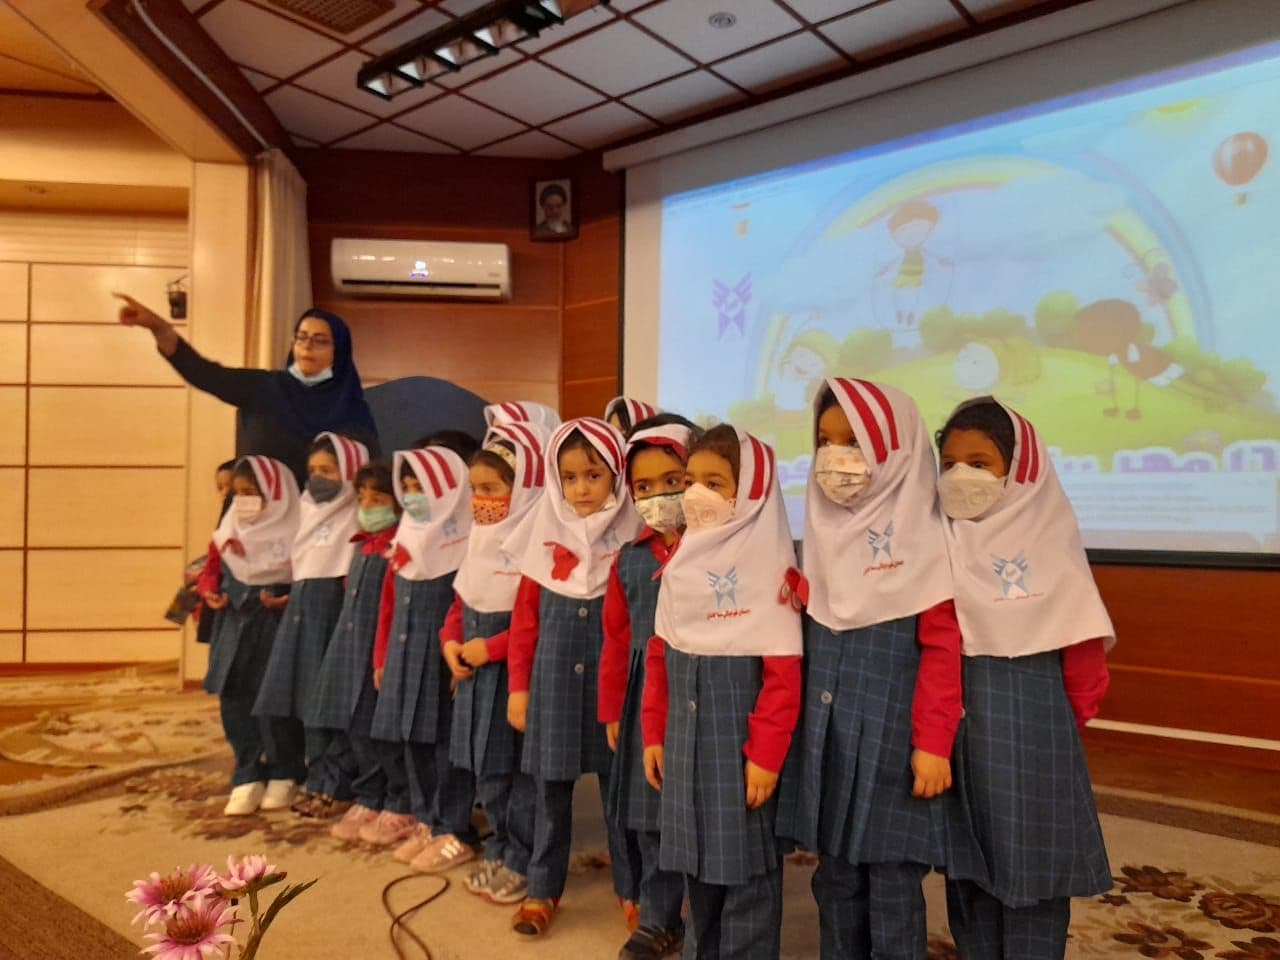 جشن روز جهانی کودک در مجتمع سمای دانشگاه آزاد اسلامی کاشان برگزار شد